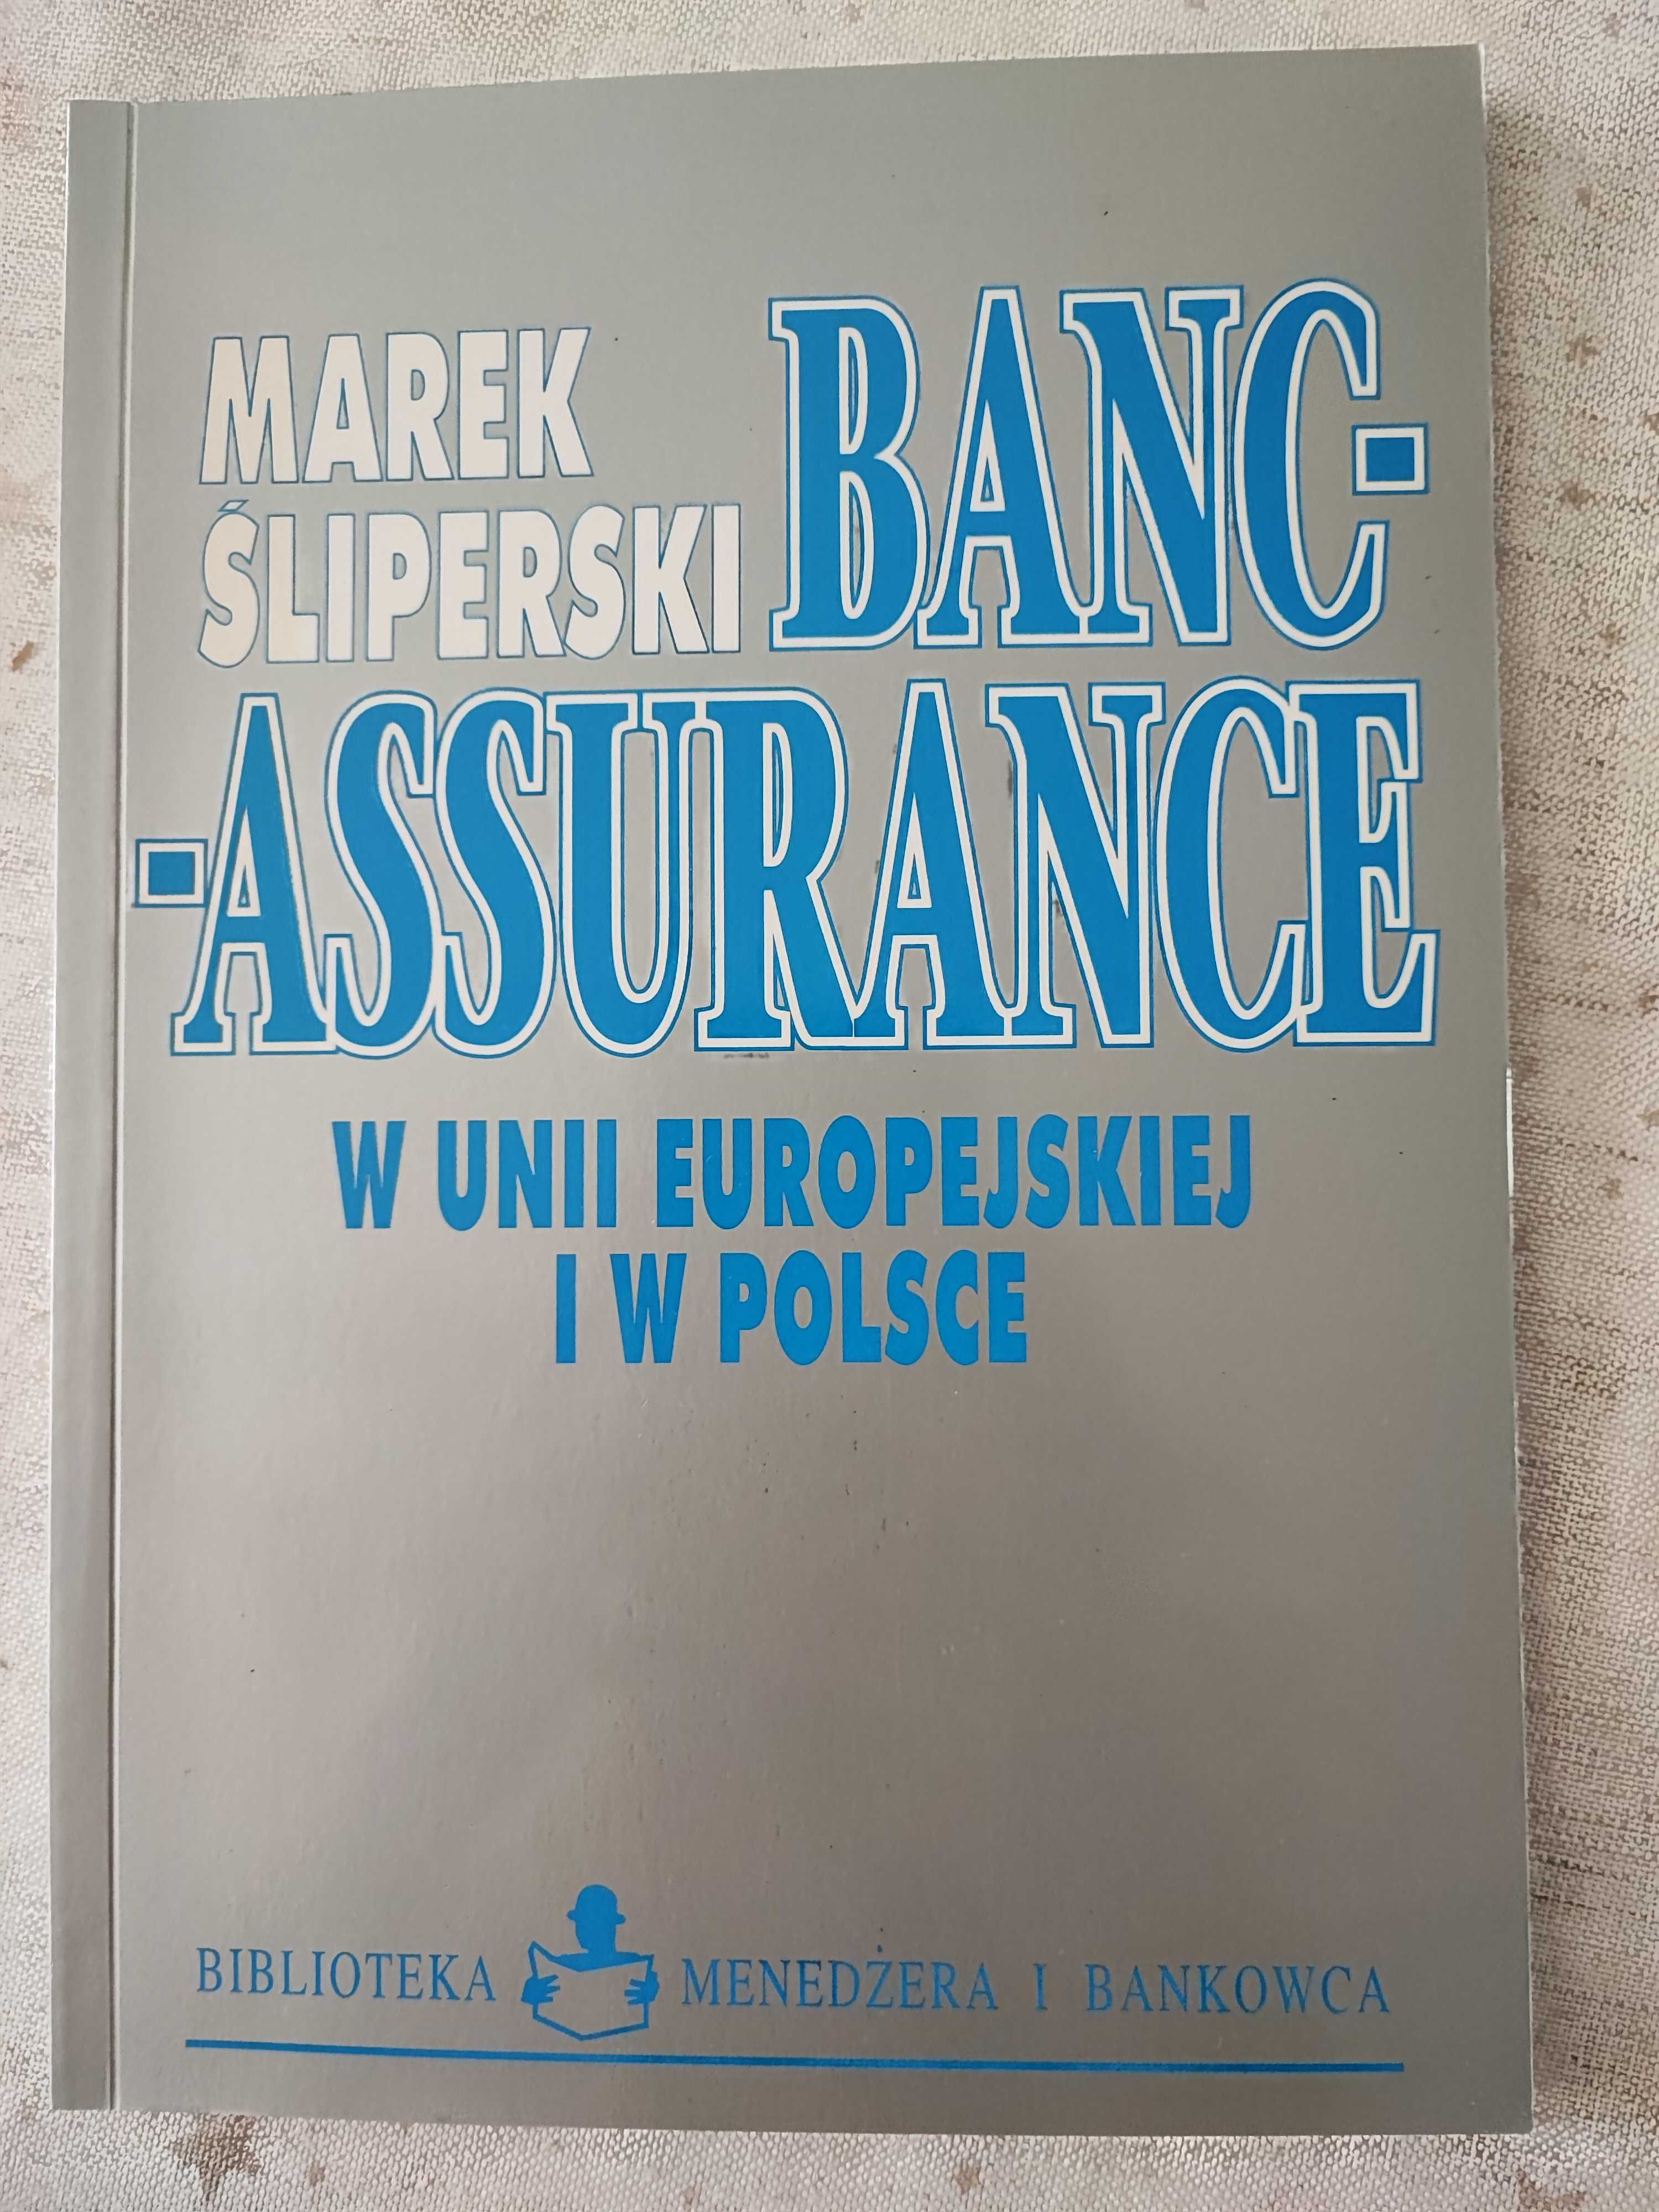 Bancassurance w Unii Europejskiej i w Polsce, Śliperski